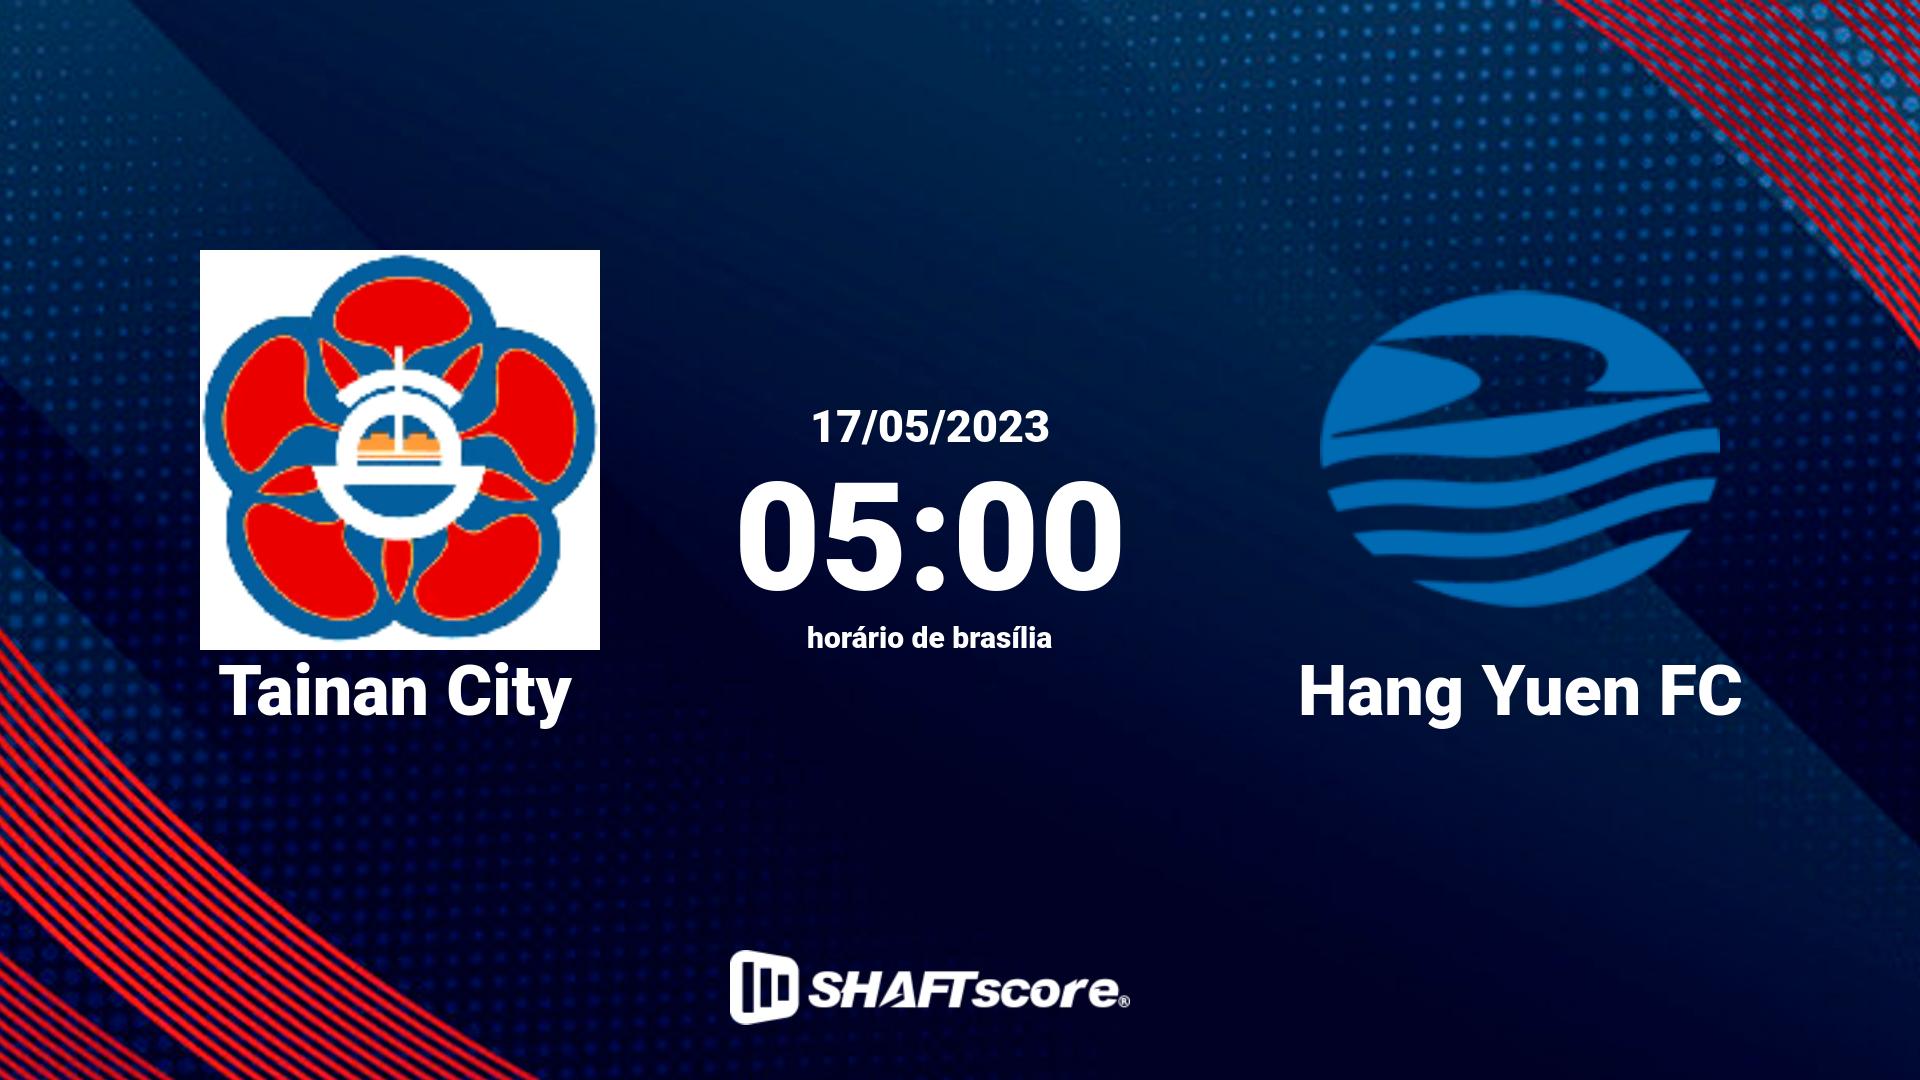 Estatísticas do jogo Tainan City vs Hang Yuen FC 17.05 05:00